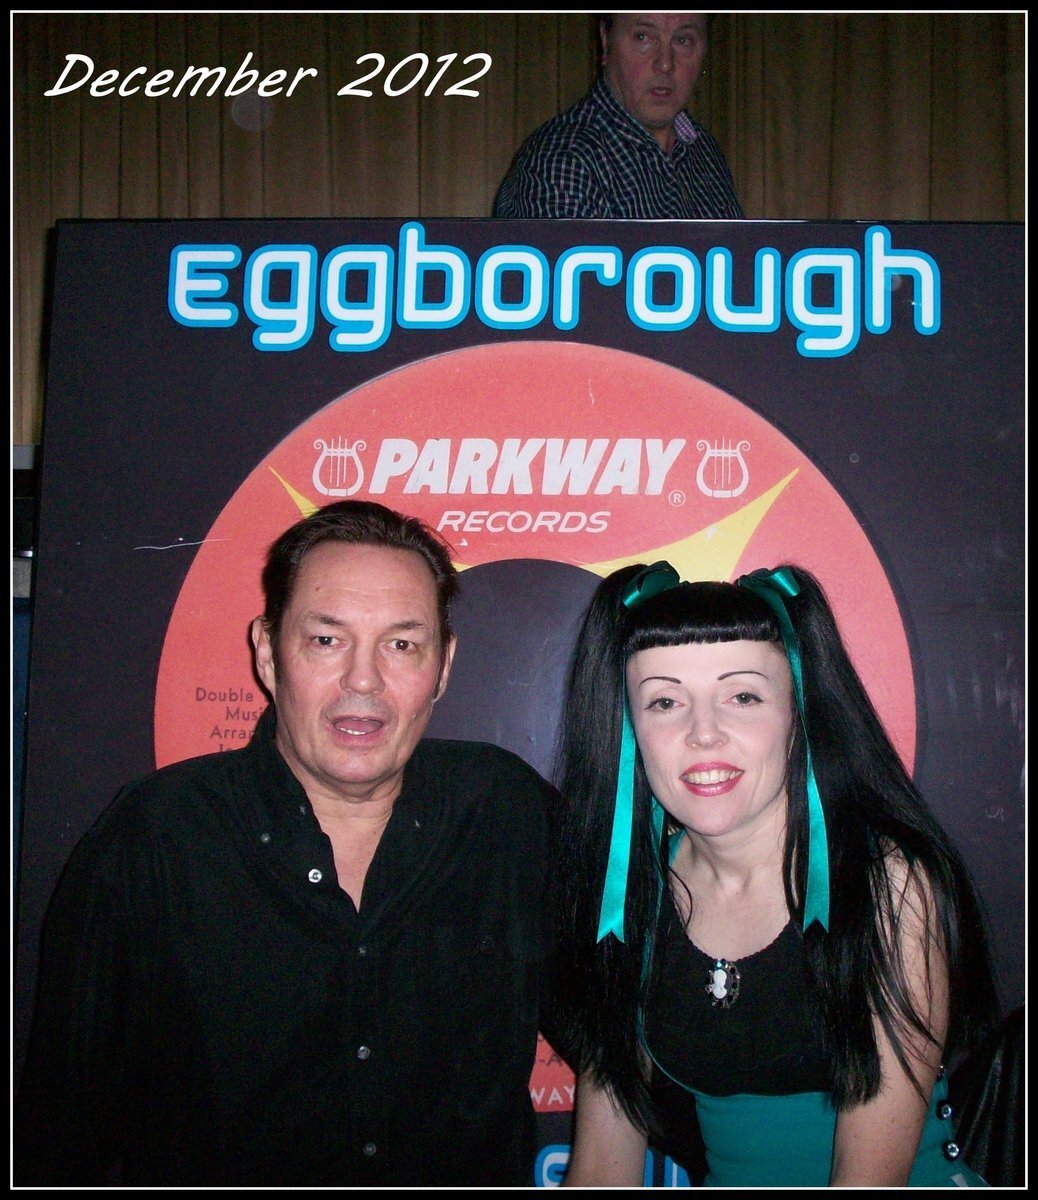 Eggborough